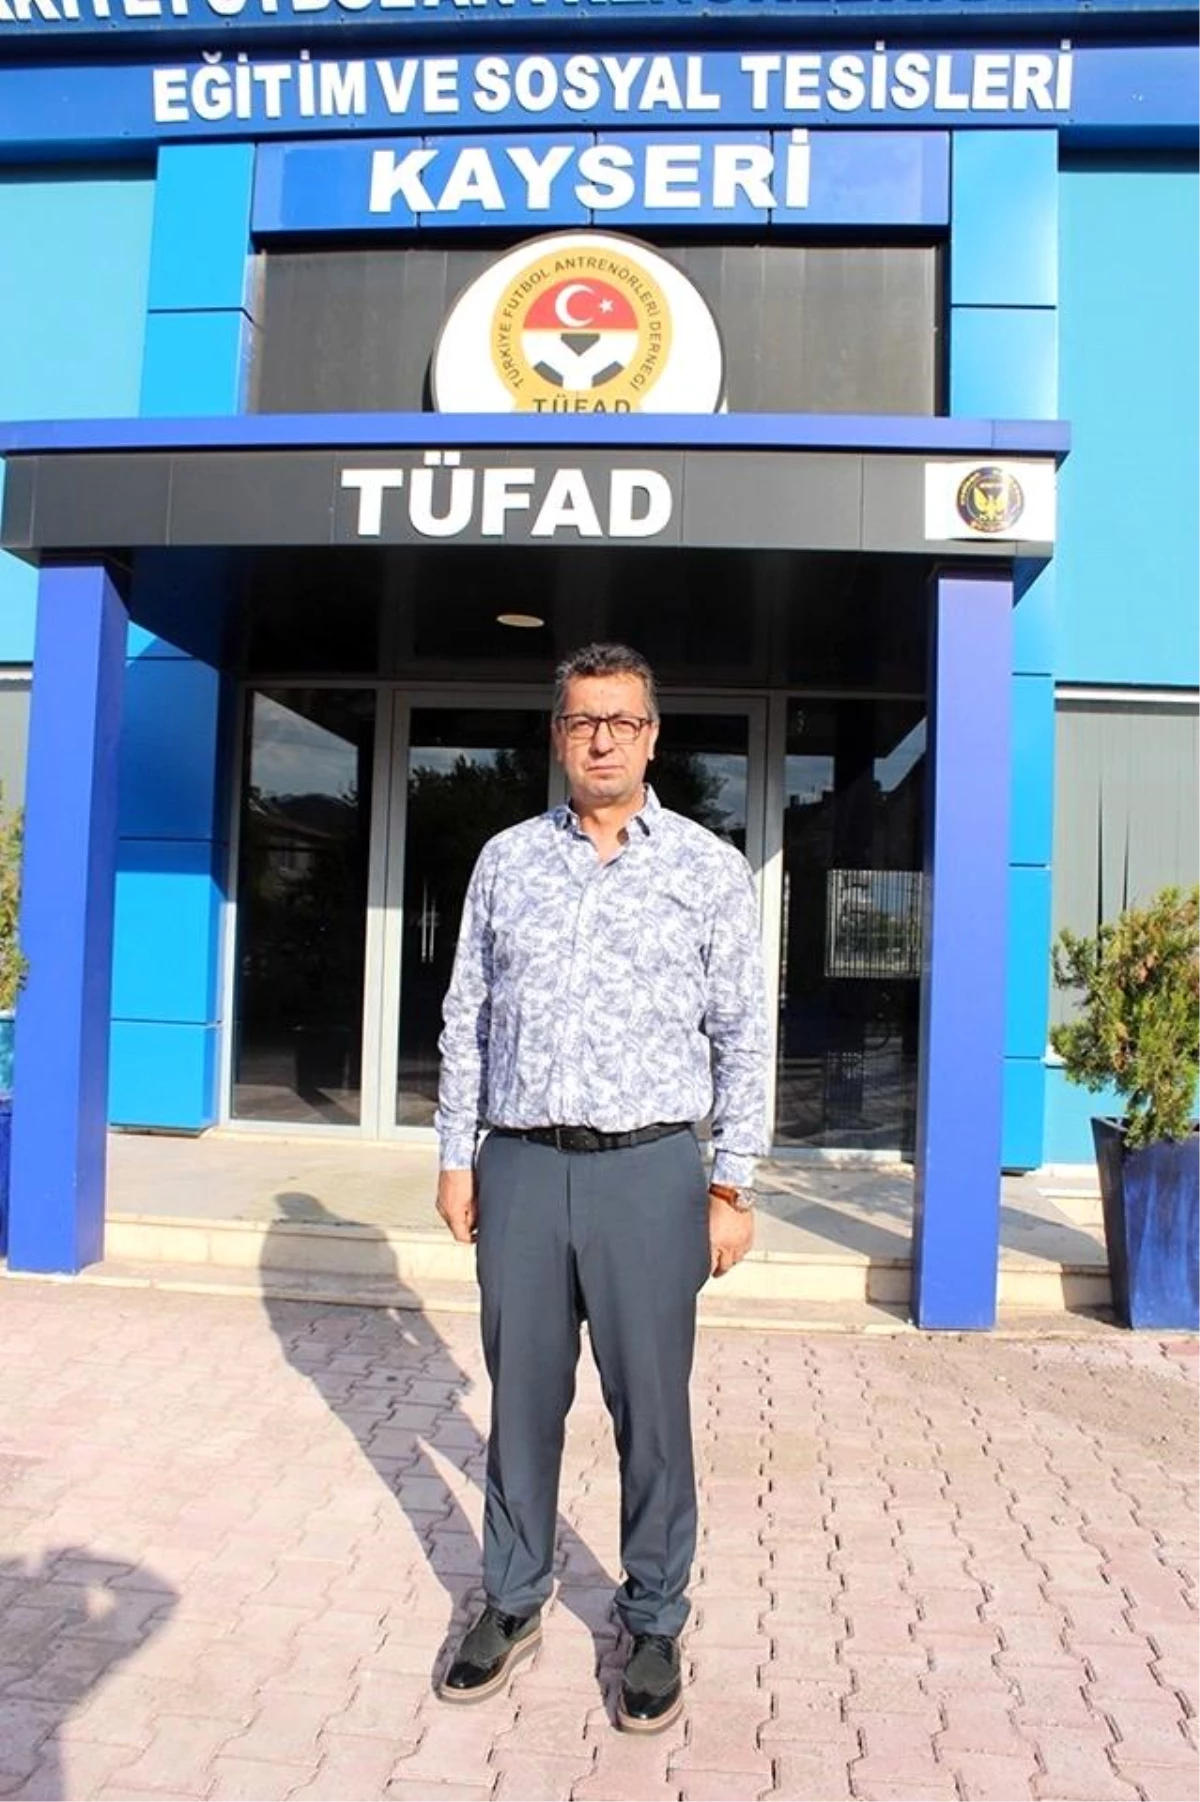 Kayseri'de TFF-TÜFAD Daima GelişimSemineri düzenlenecek